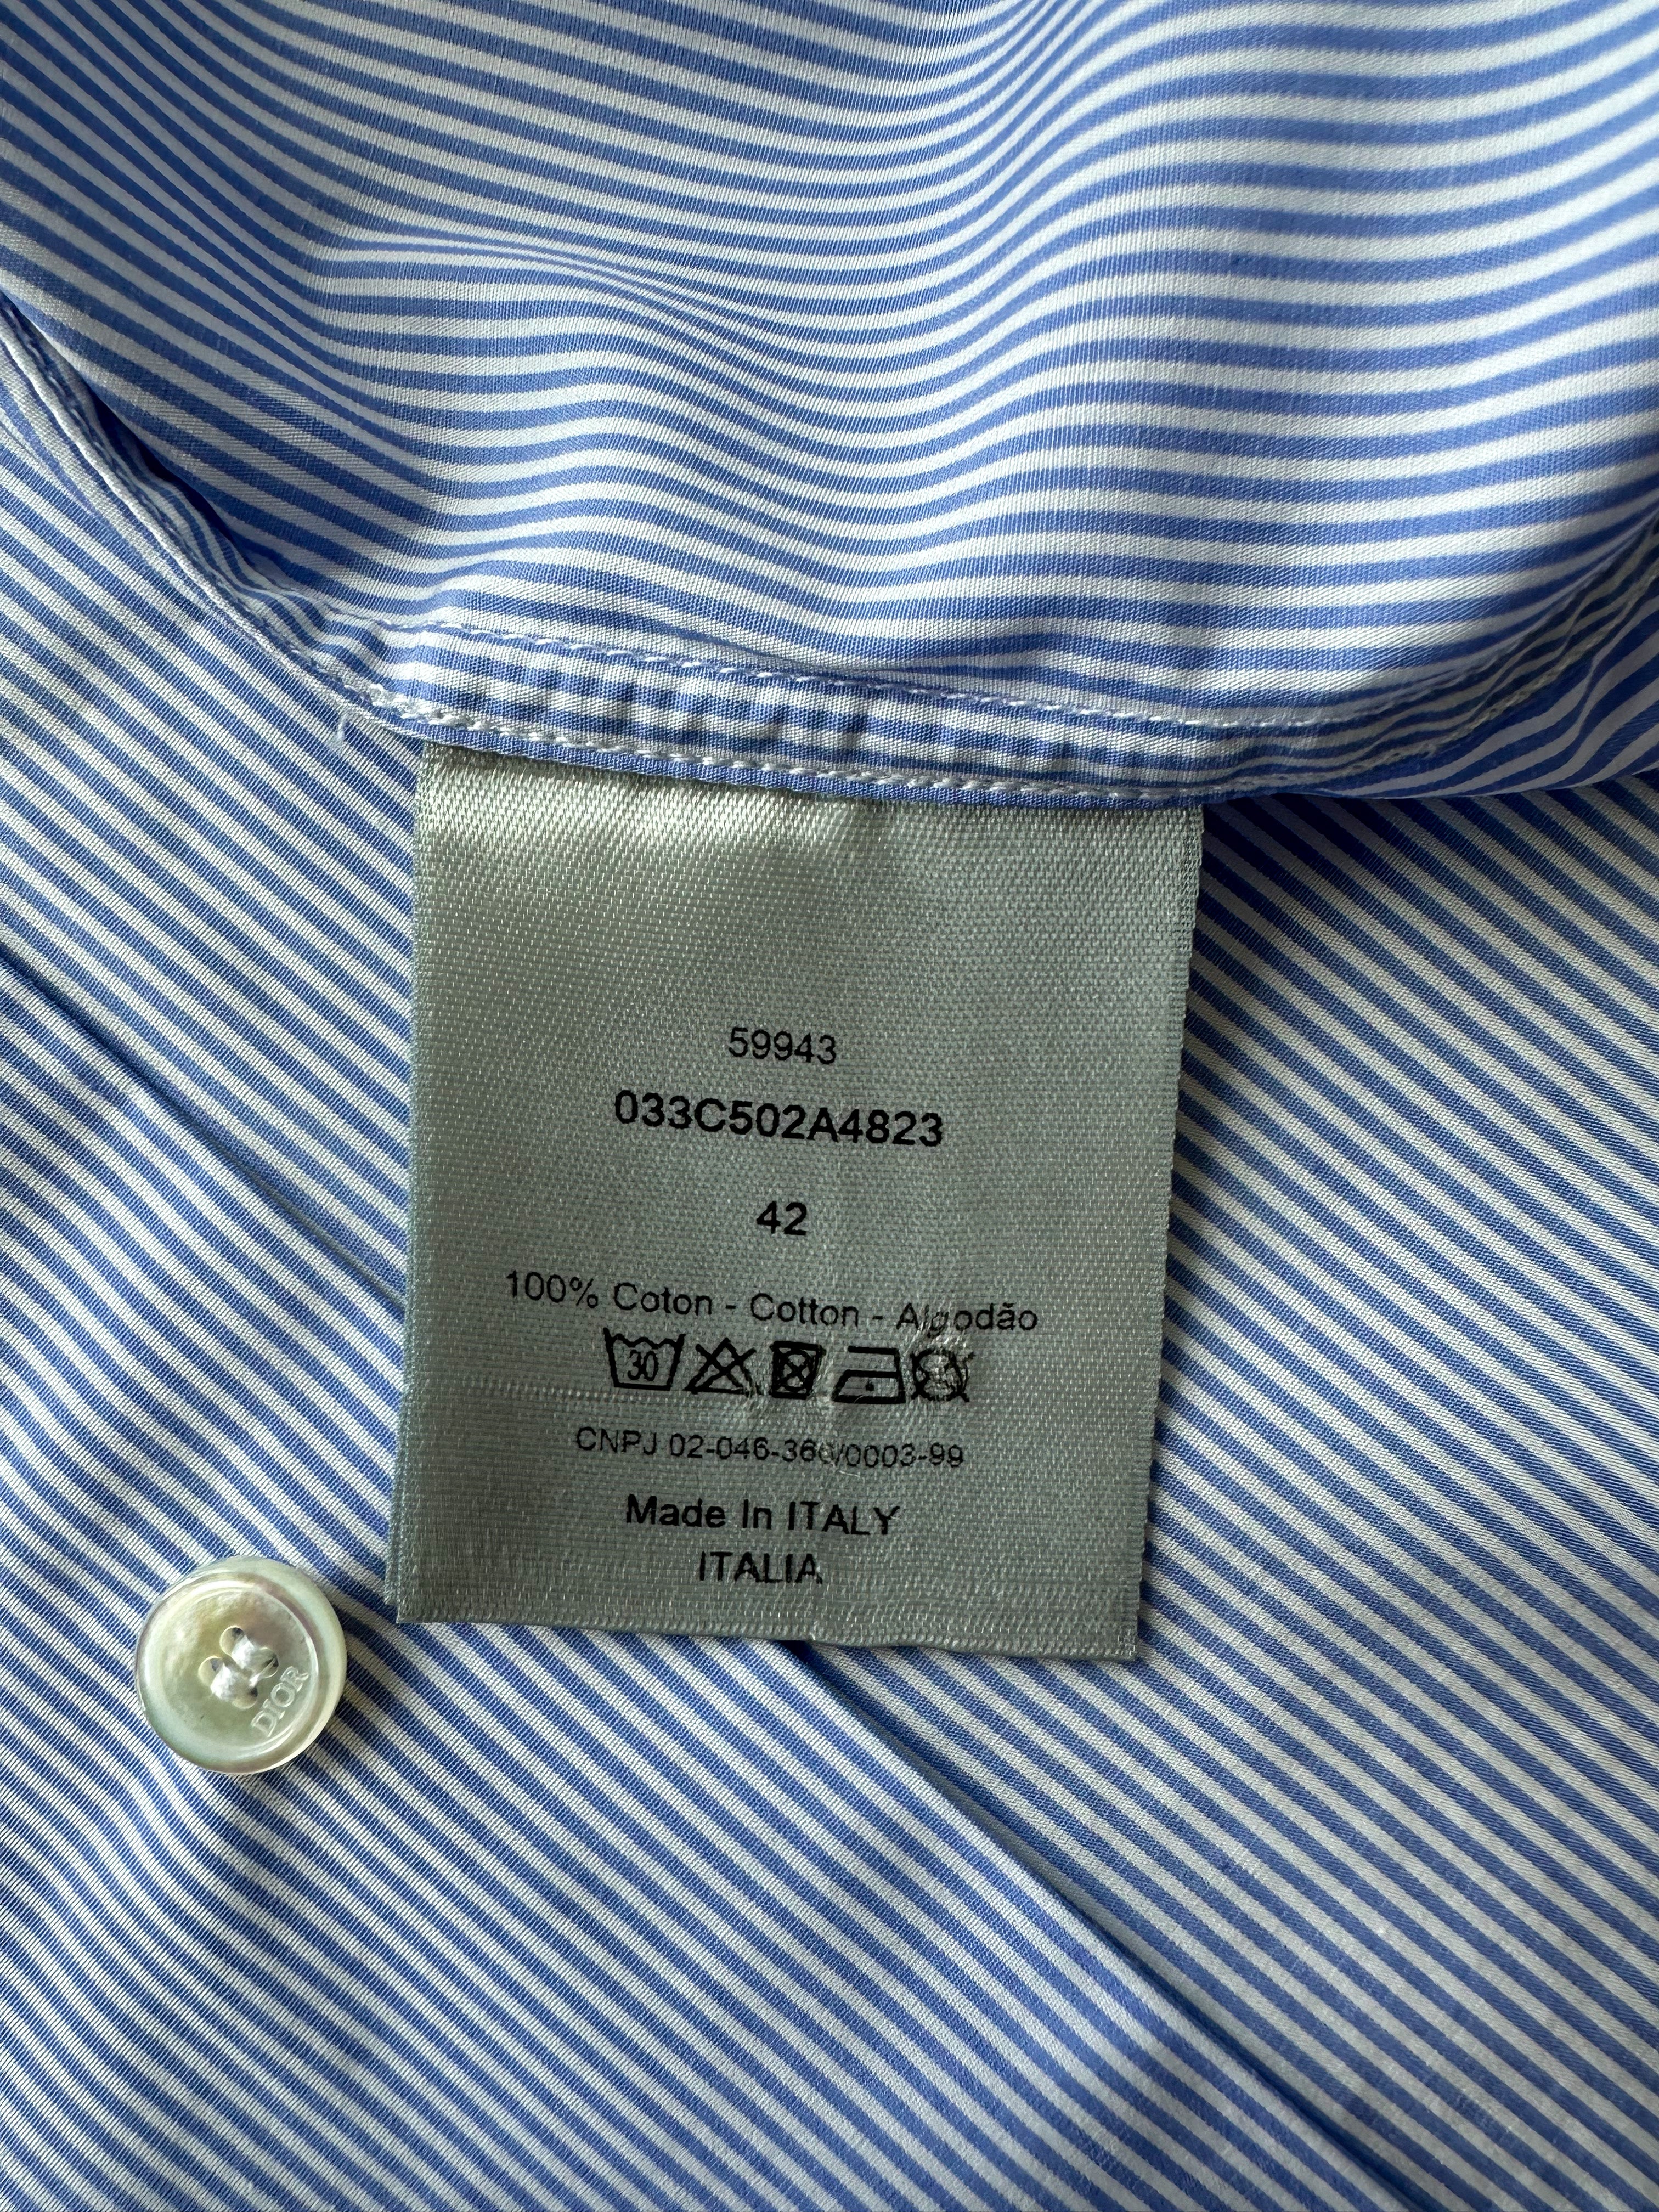 Dior Air Jordan Blue & White Striped Embroidered shirt